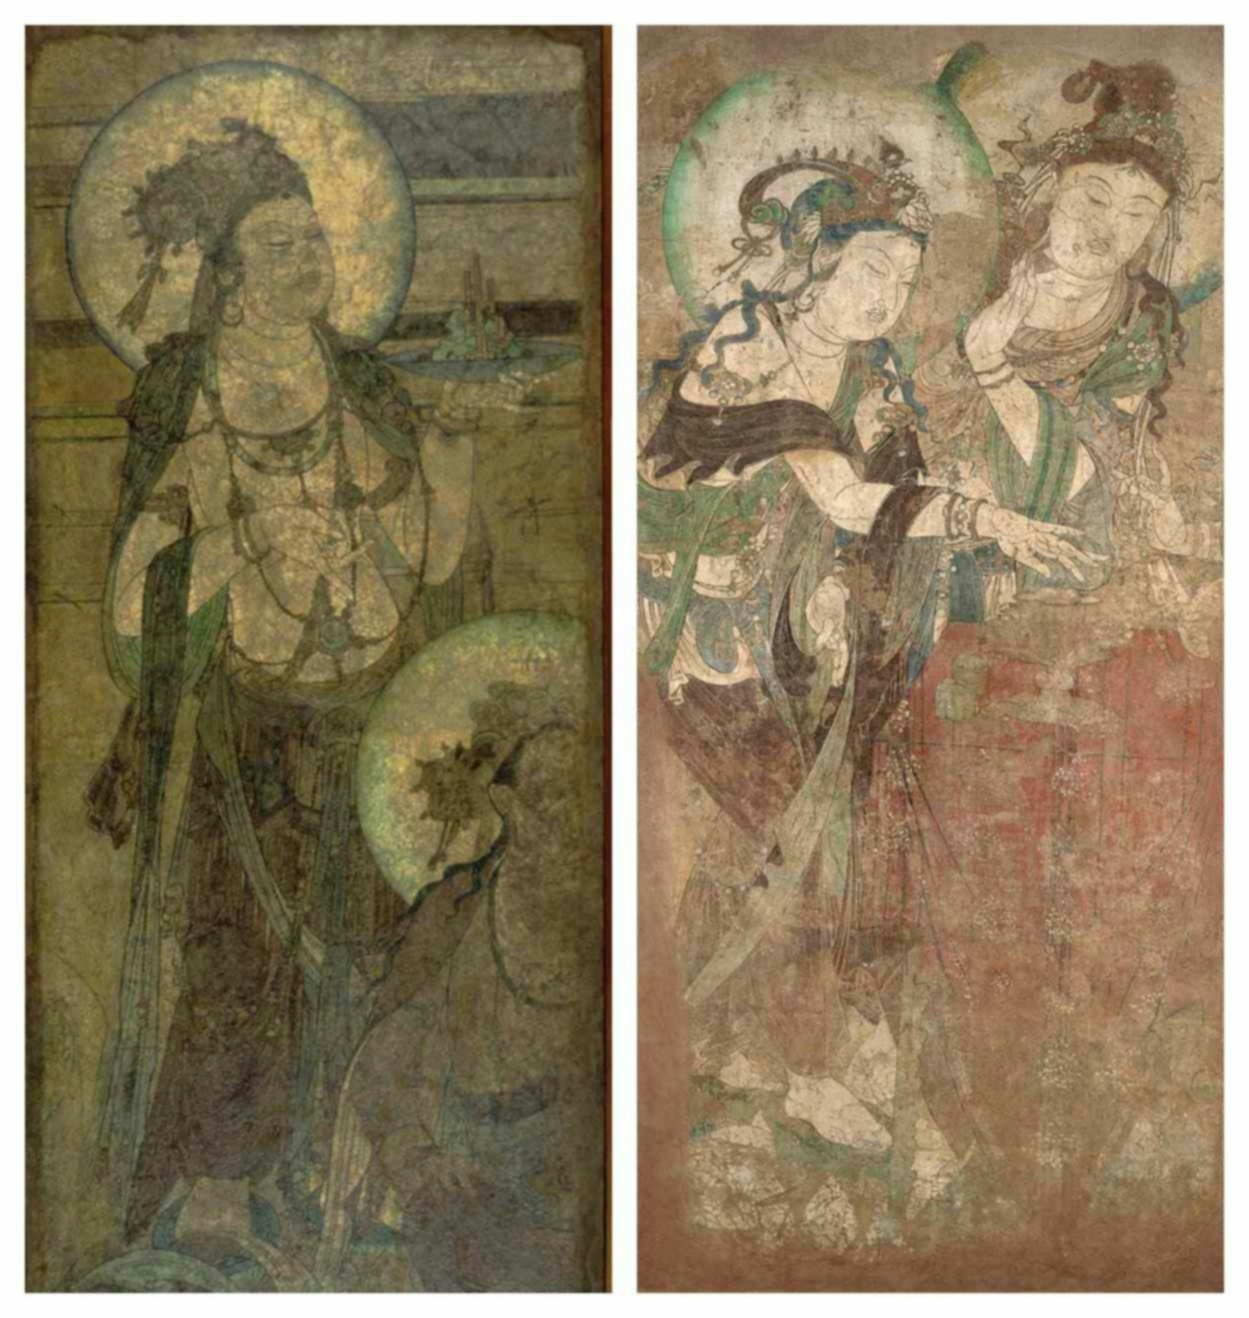 Ming Dynasty wall murals of Bodhisattva Avalokitesvara (Guanyin)